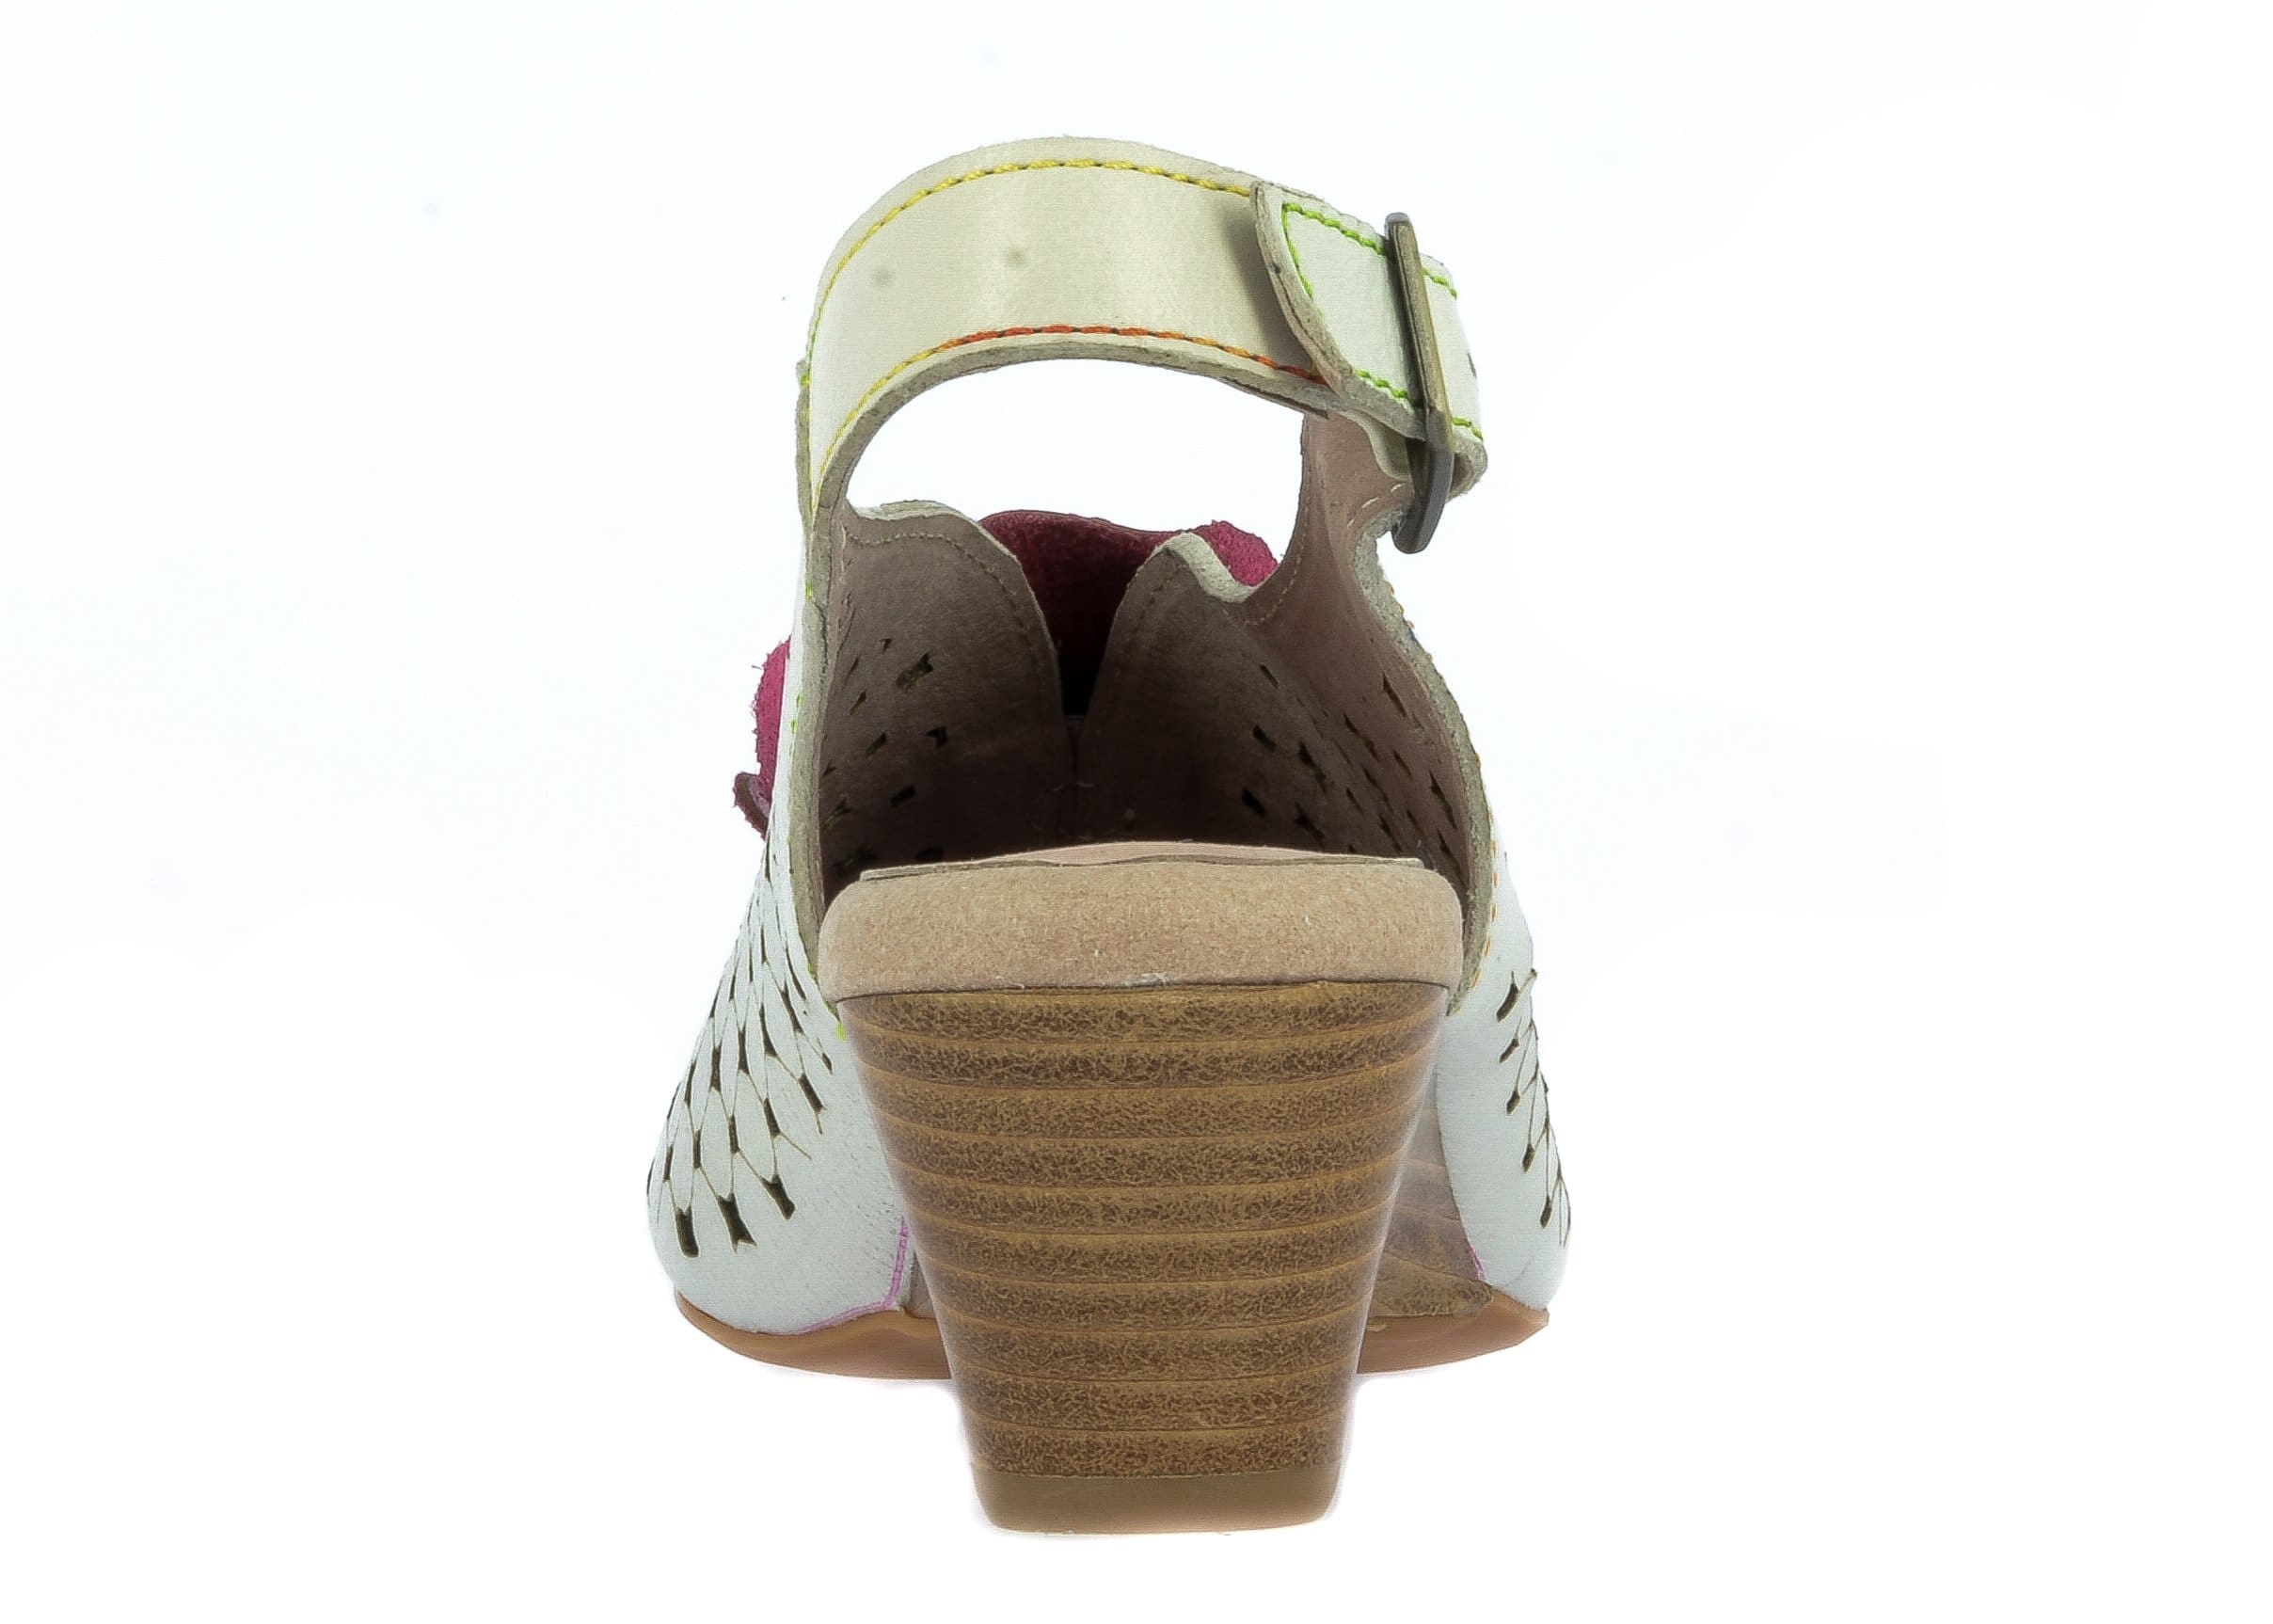 Zapato FACRIO02 - Sandalia